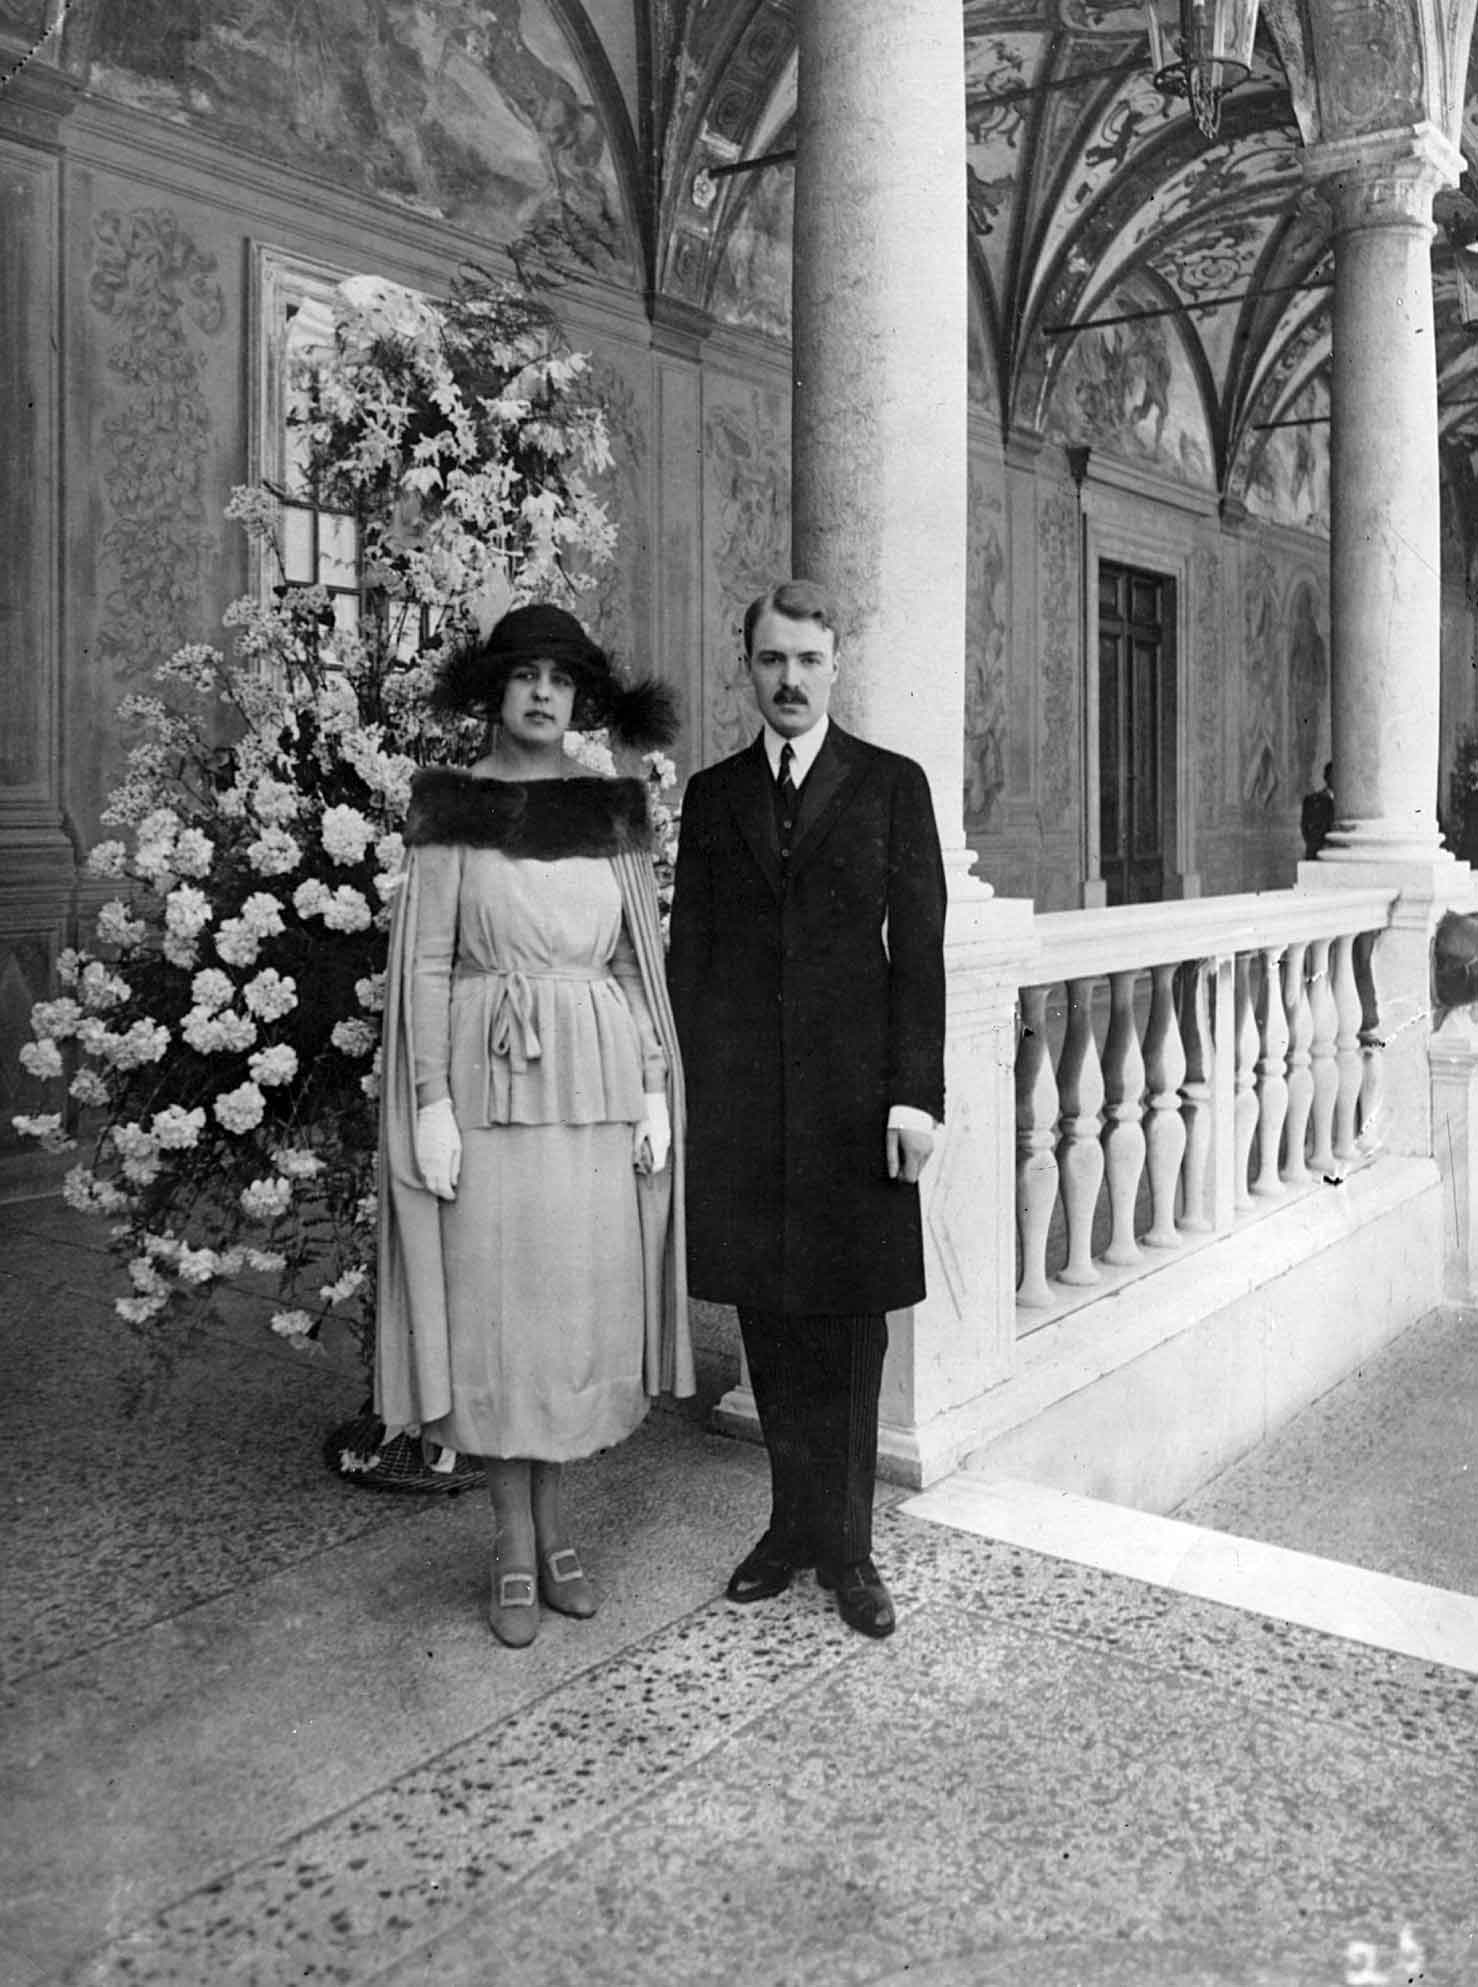 El matrimonio entre Carlota y Pierre fue arreglado y nunca se entendieron como esposos (foto tomada en Mónaco en 1931)